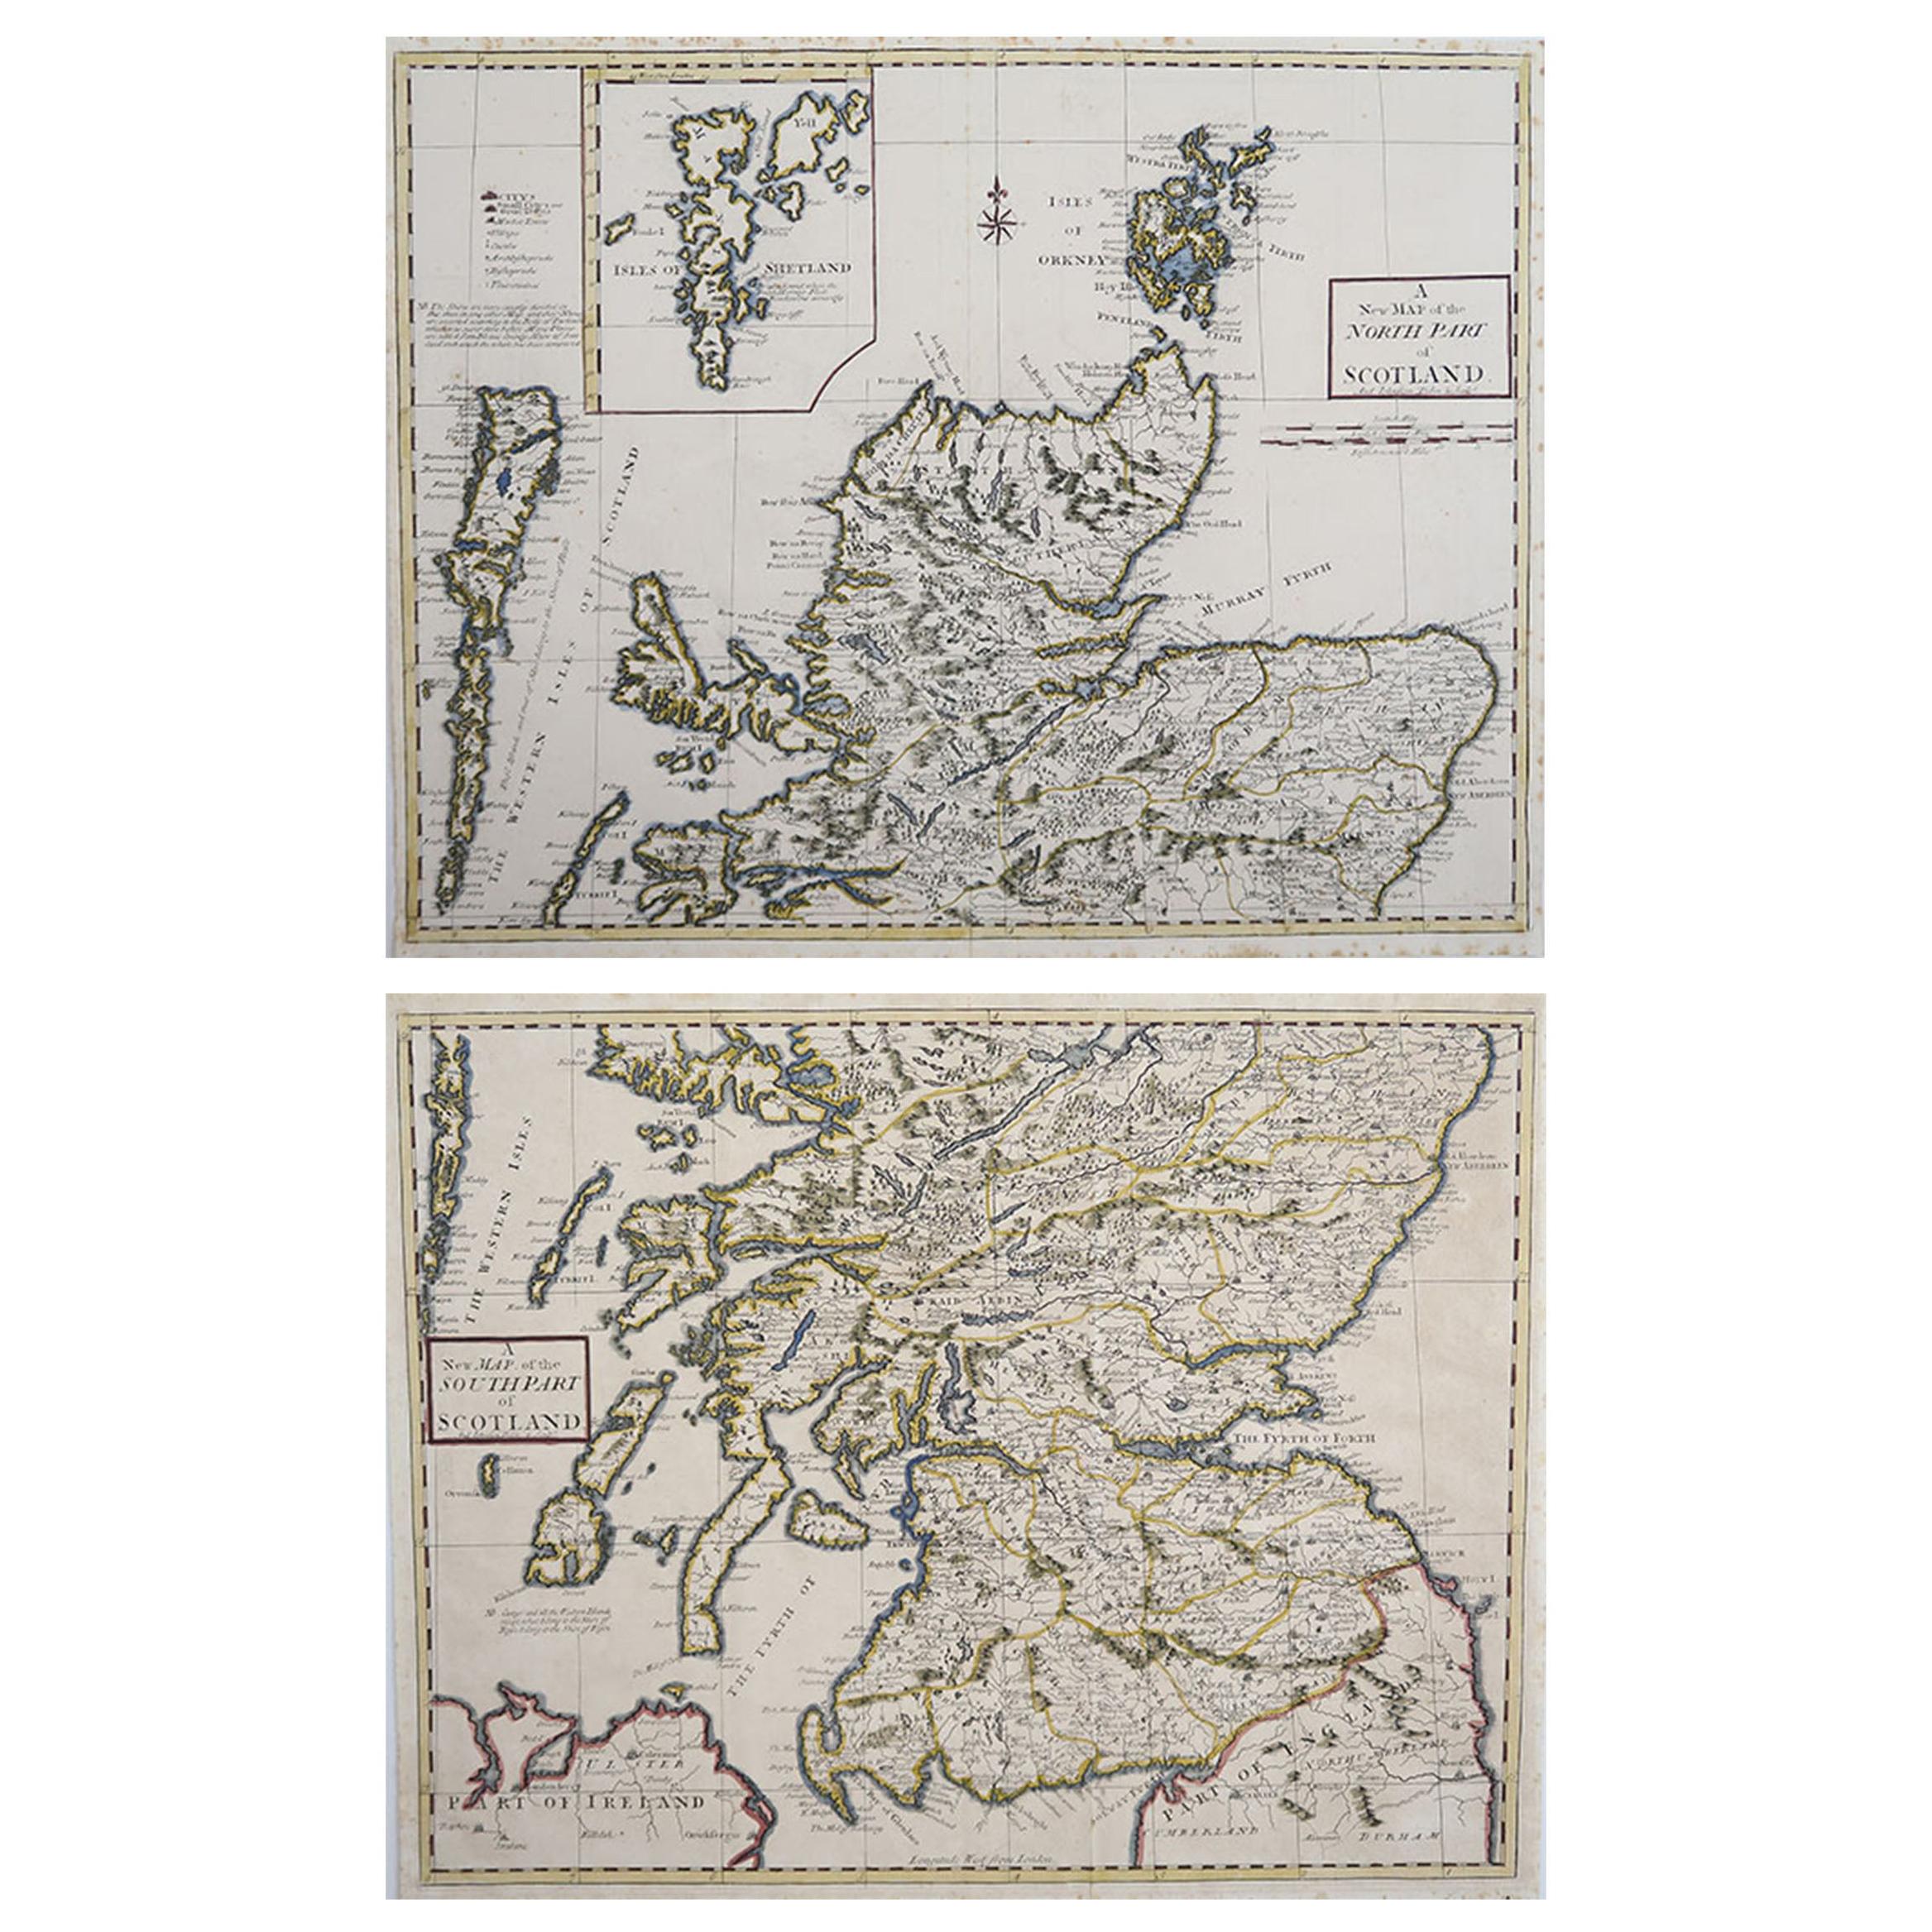 Original Antique Maps of Scotland by Andrew Johnstone, 1753